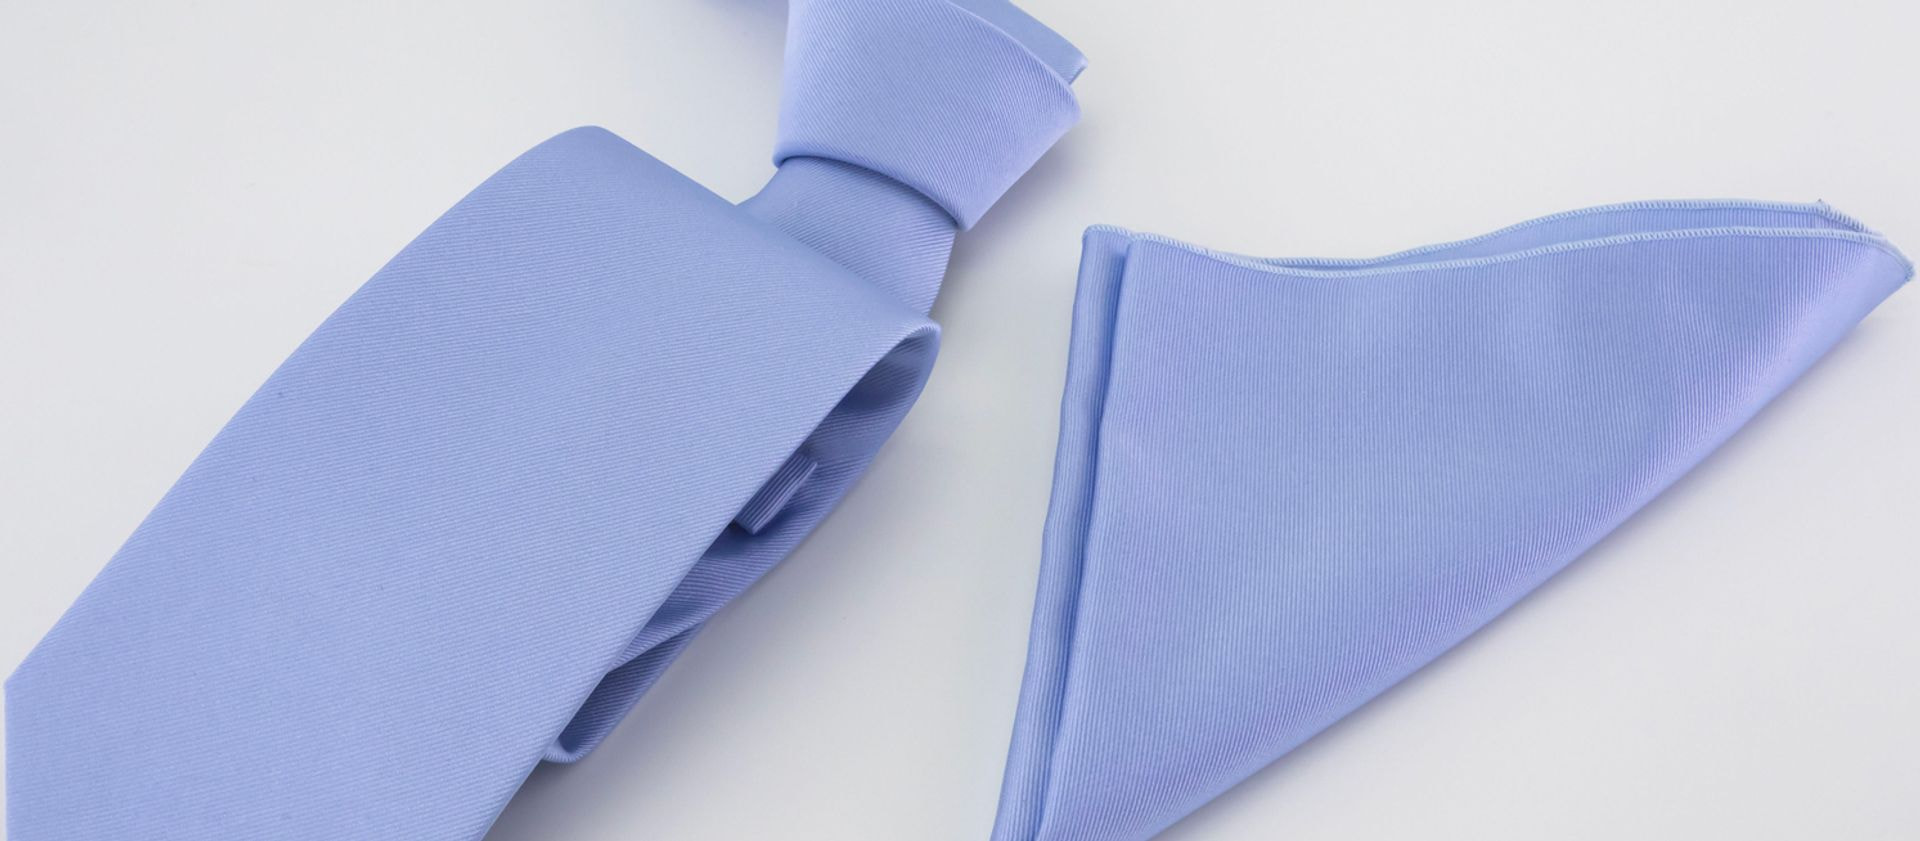 Blue tie and pocket-handkerchief